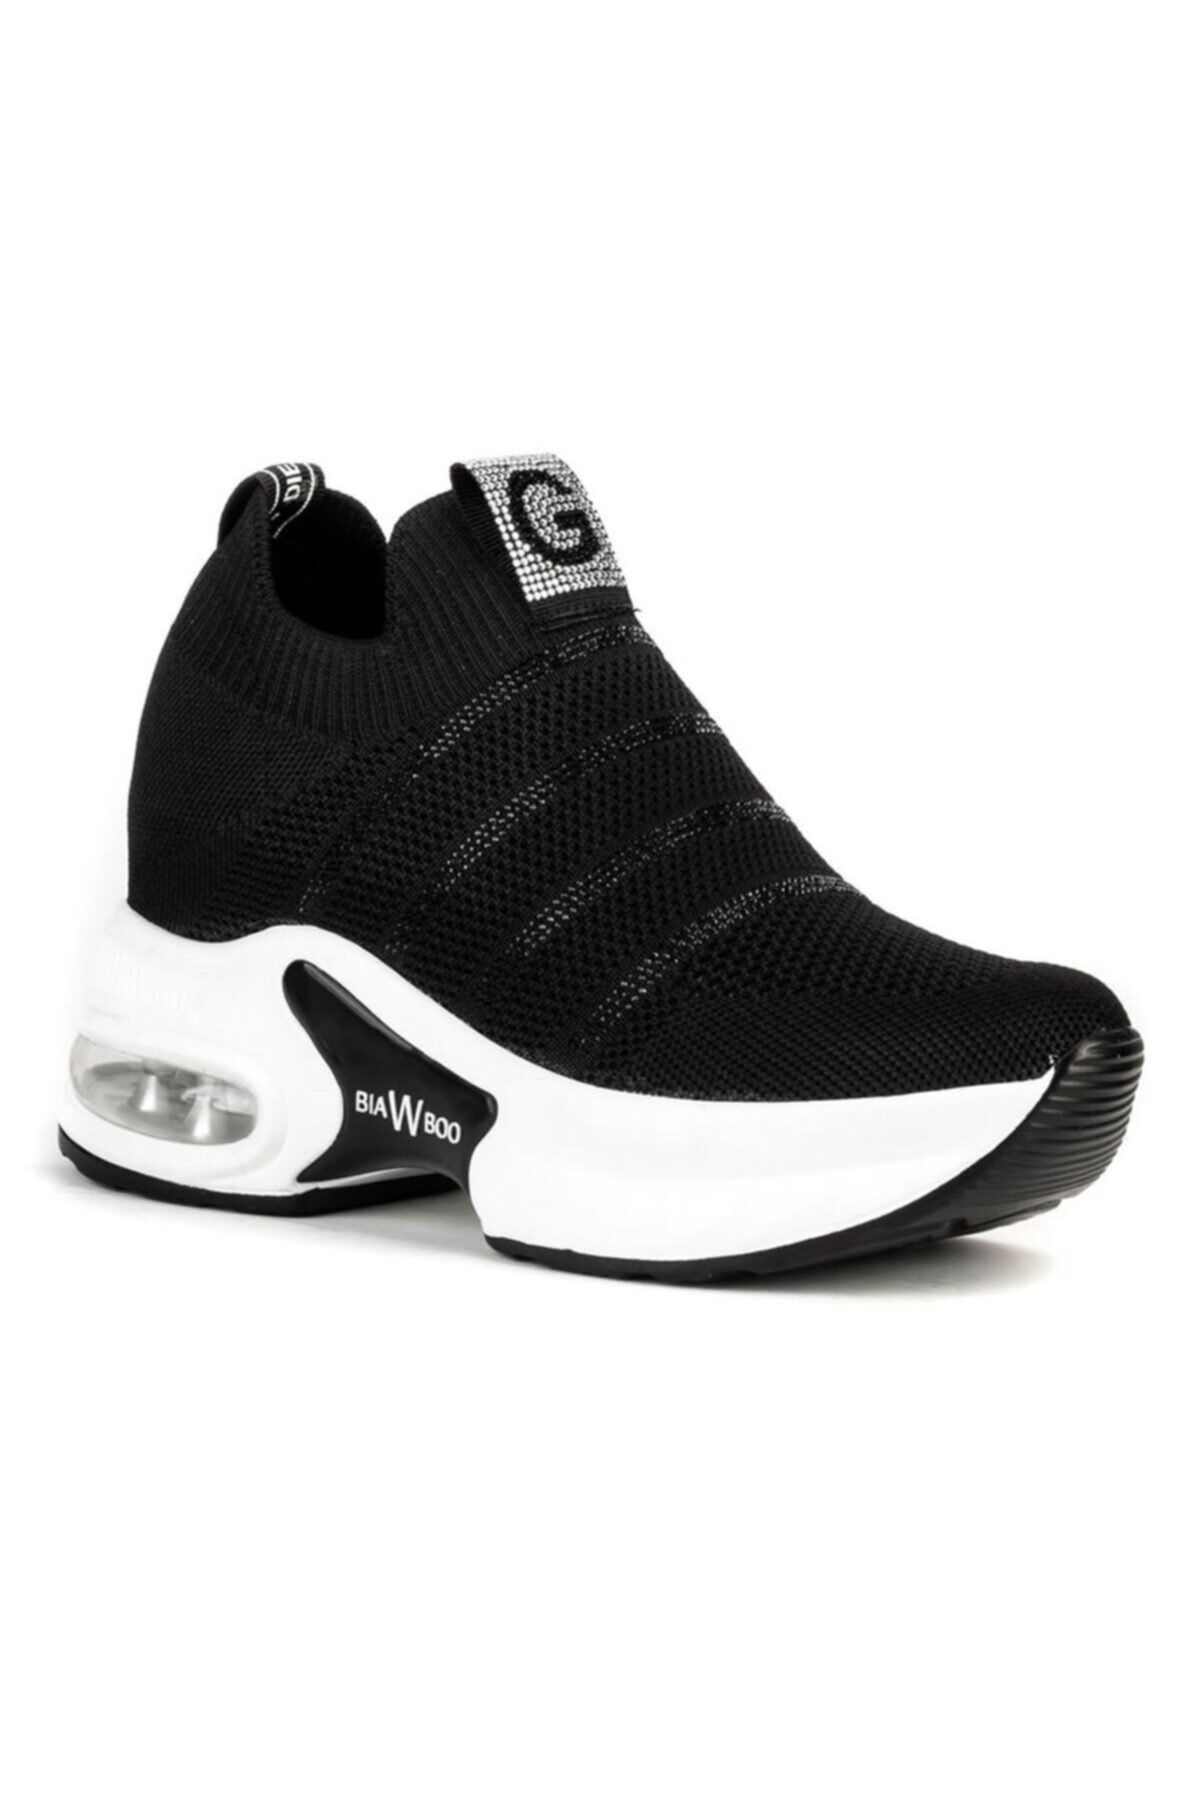 Guja Örgü Siyah Bayan Spor Sneaker